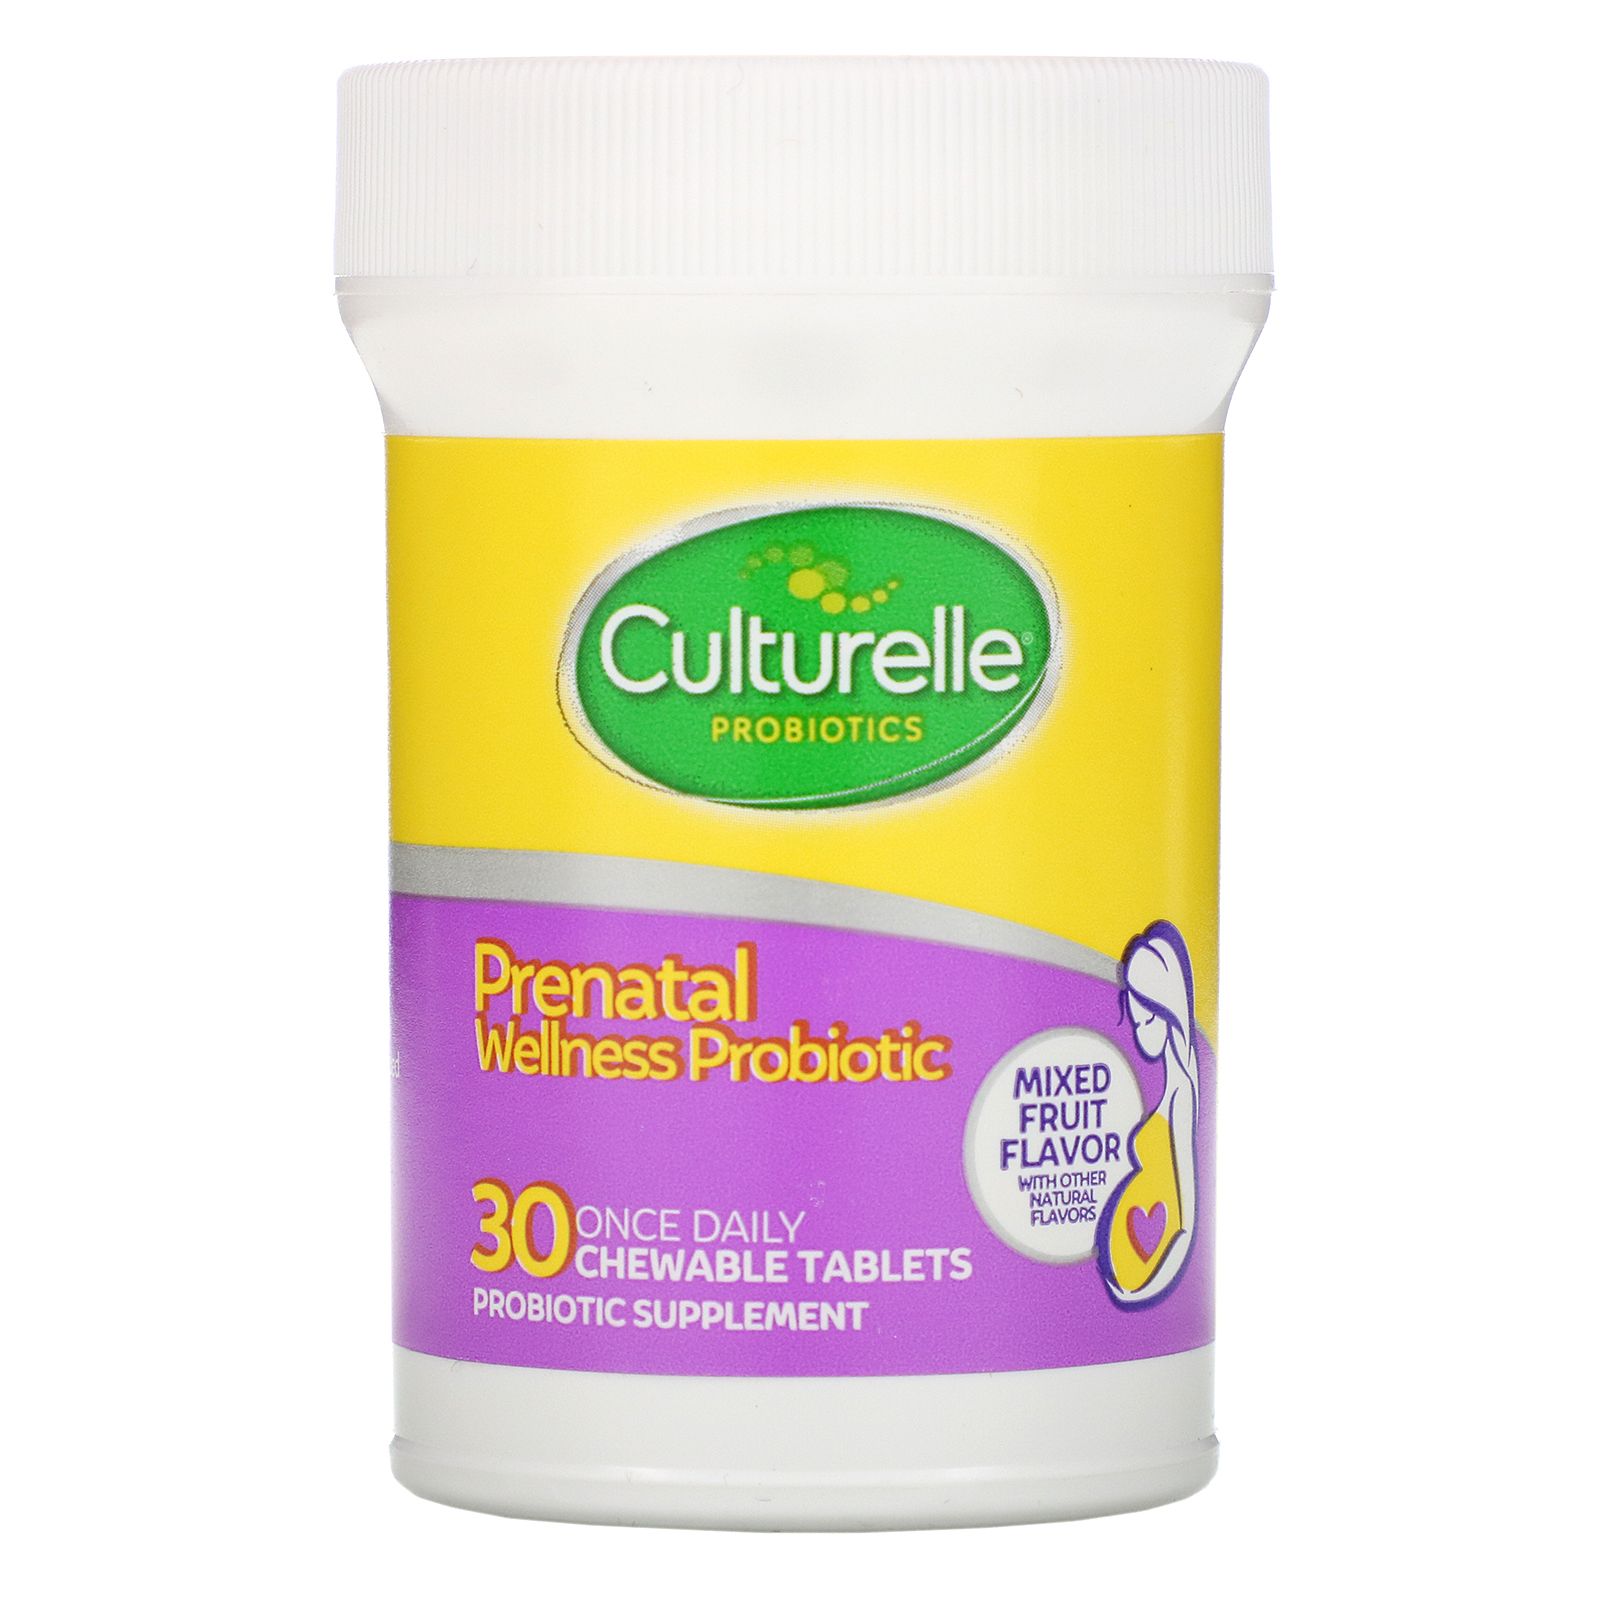 Once 30. Culturelle пробиотик Baby. Пробиотик пренатал. Culturelle пробиотик для детей новорожденных.